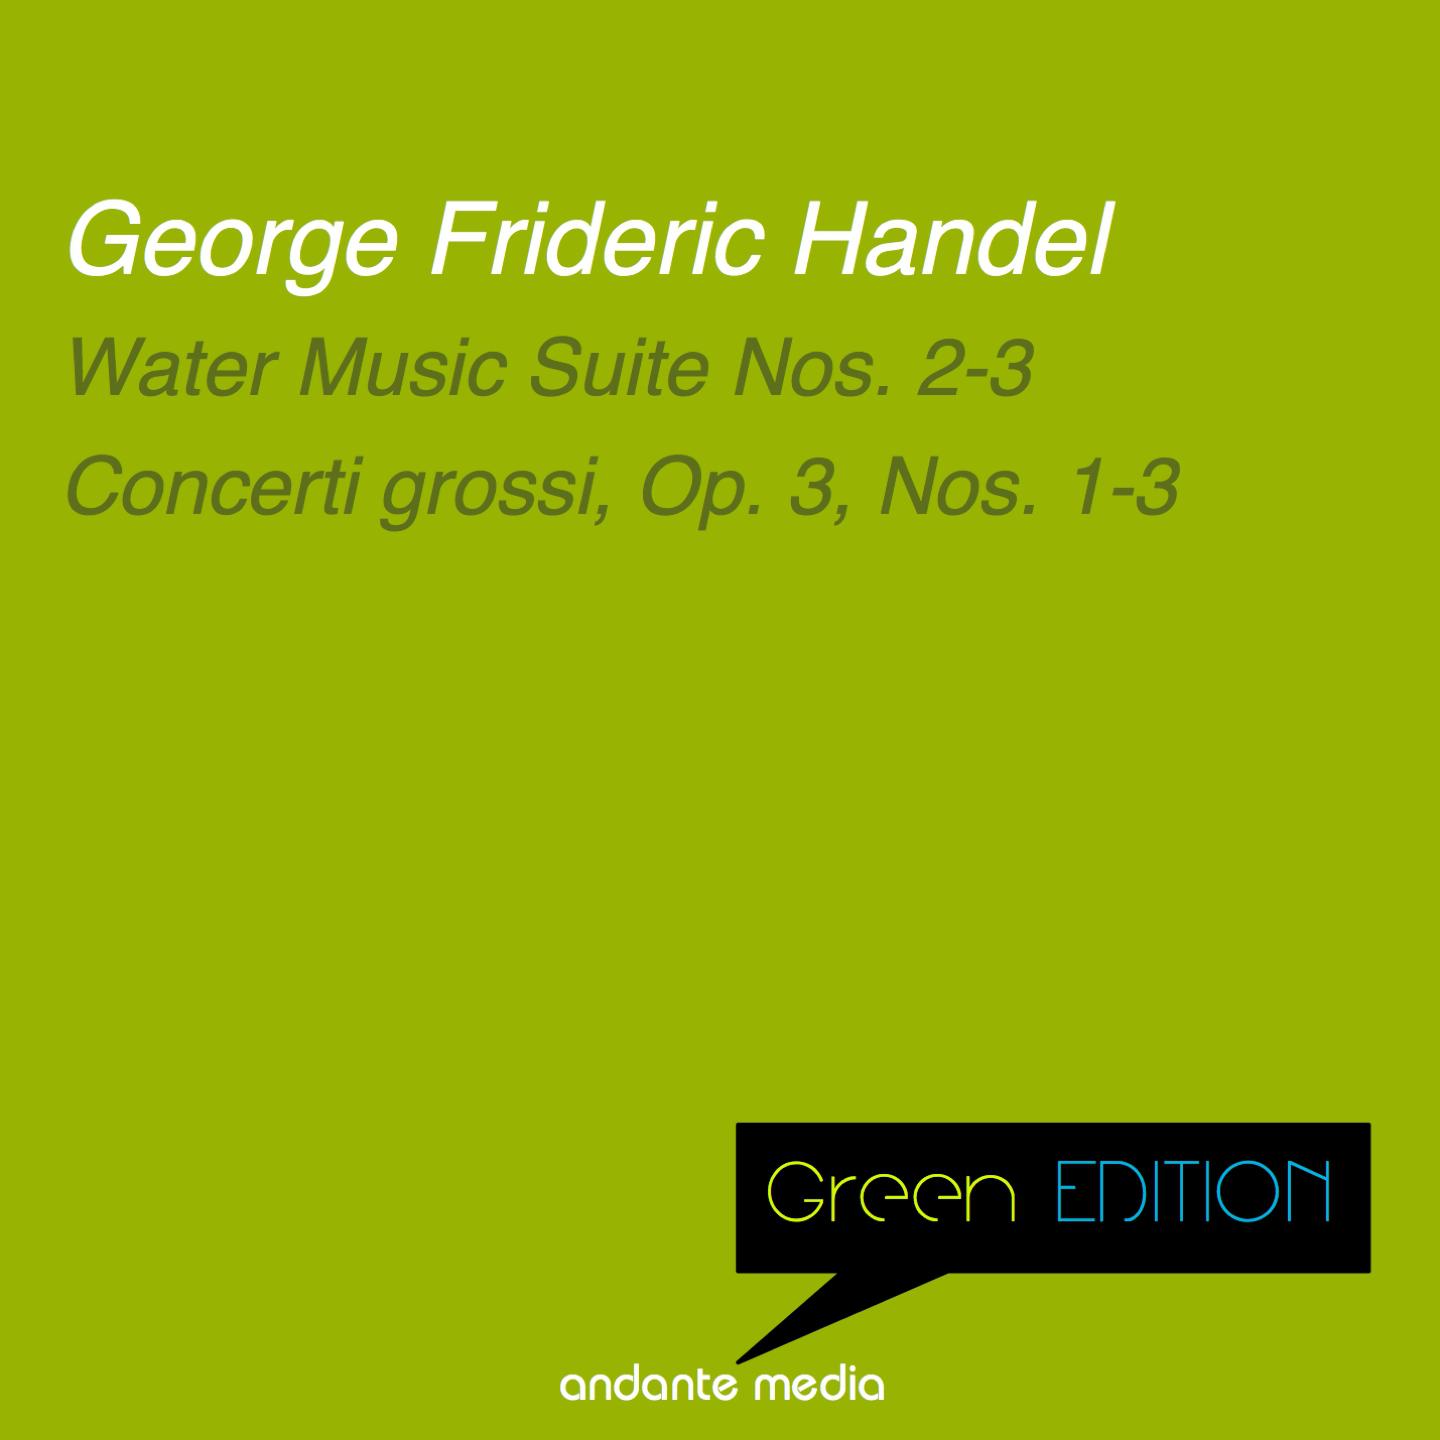 Green Edition - Handel: Water Music Suite Nos. 2 - 3 & Concerti grossi, Op. 3, Nos. 1 - 3